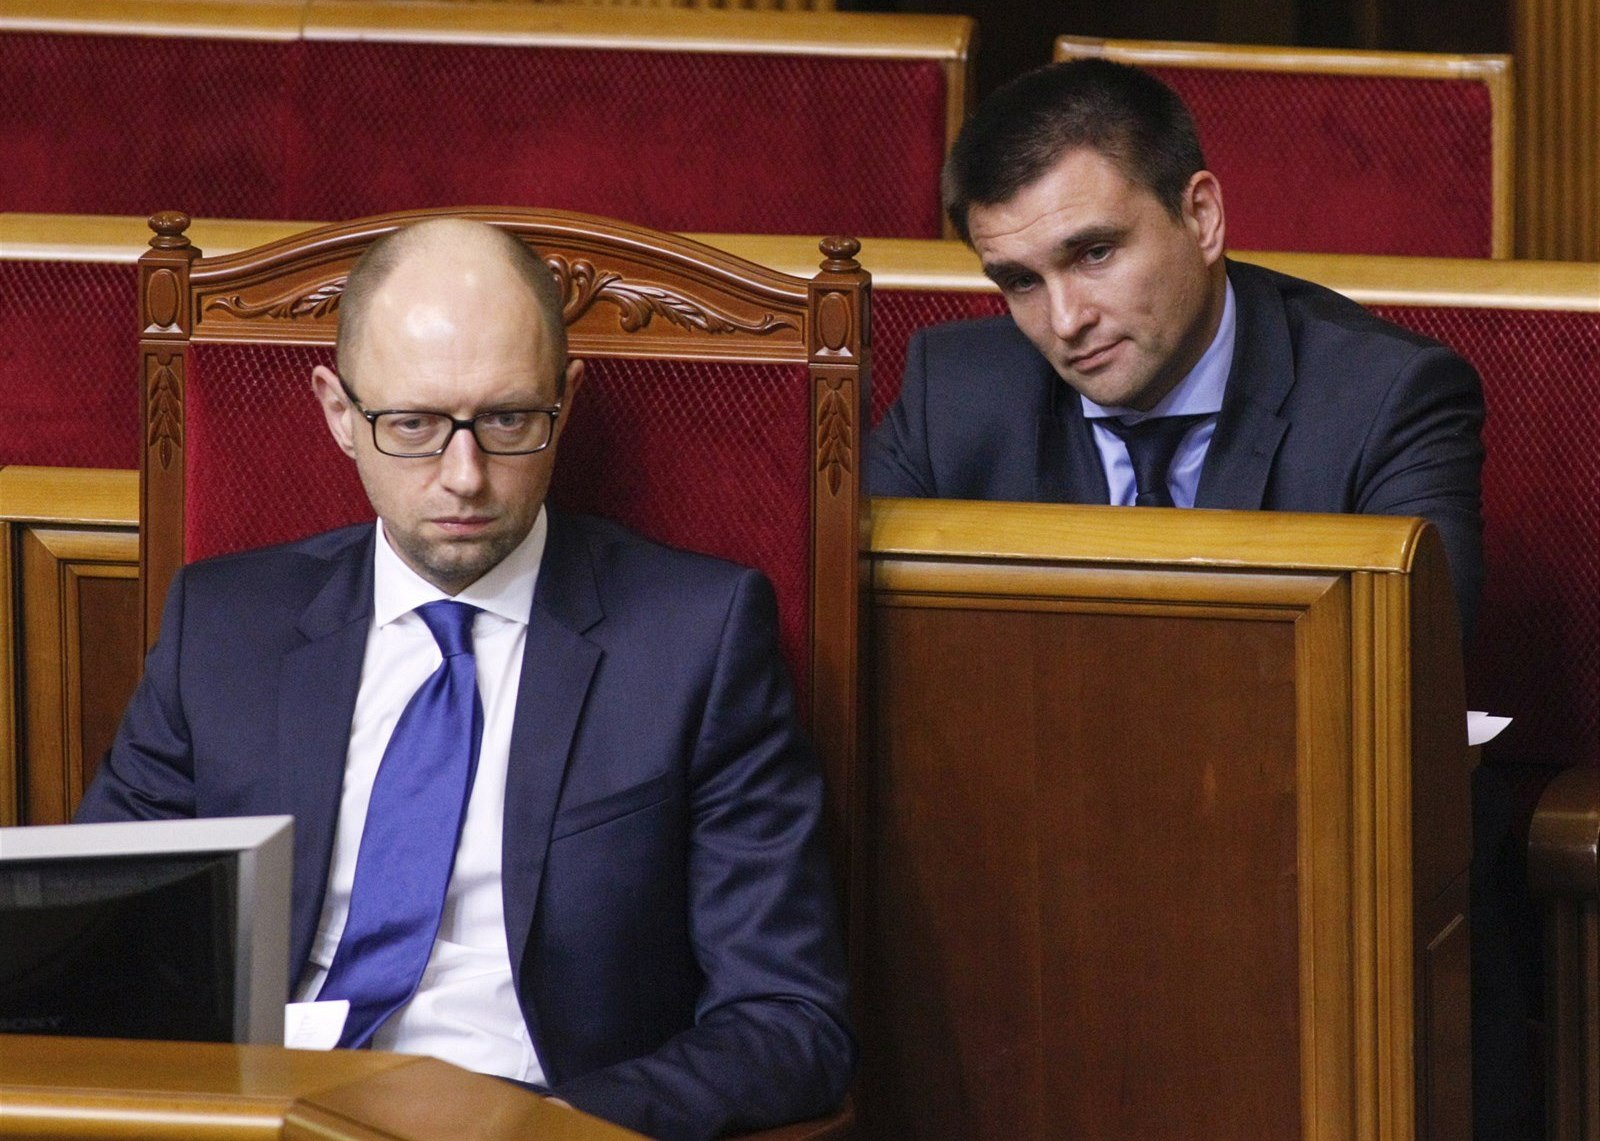 Ukrajinský premiér Arsenij Jaceňuk (vlevo) s ministrem zahraničí Pavlem...